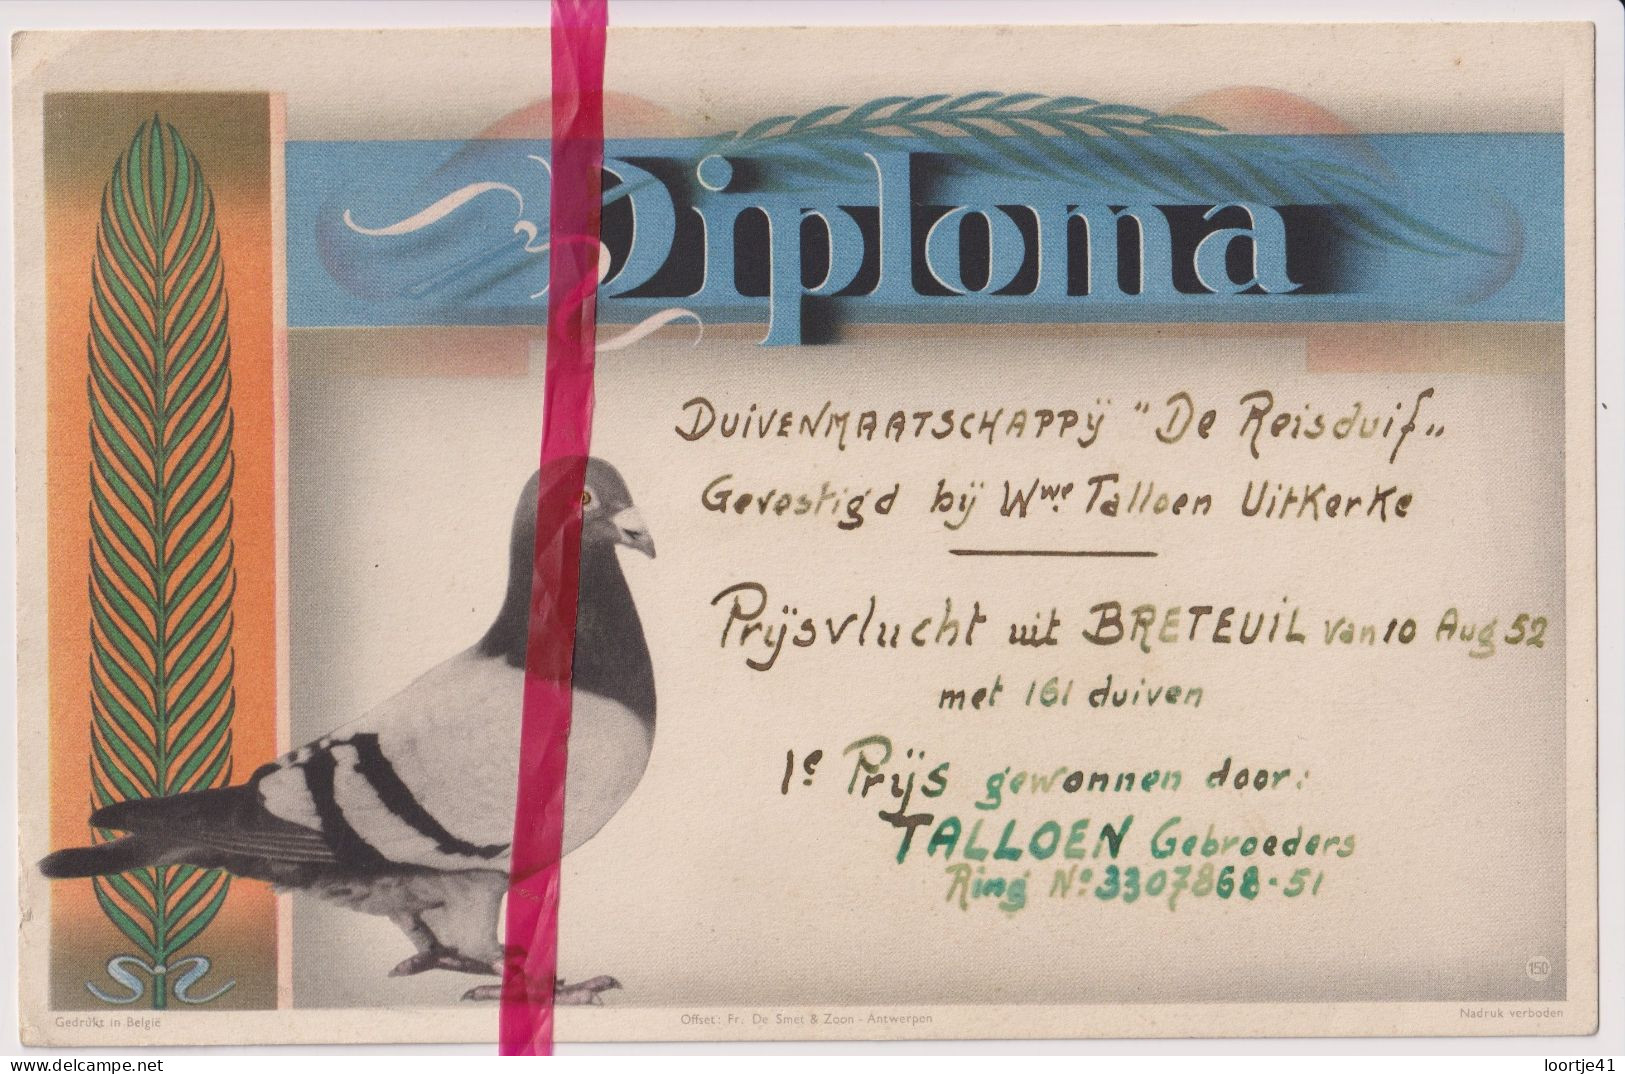 Diploma Duiven 1° Prijs Talloen Gebrs - Uitkerke 1952 - Maatschappij De Reisduif - Diplômes & Bulletins Scolaires